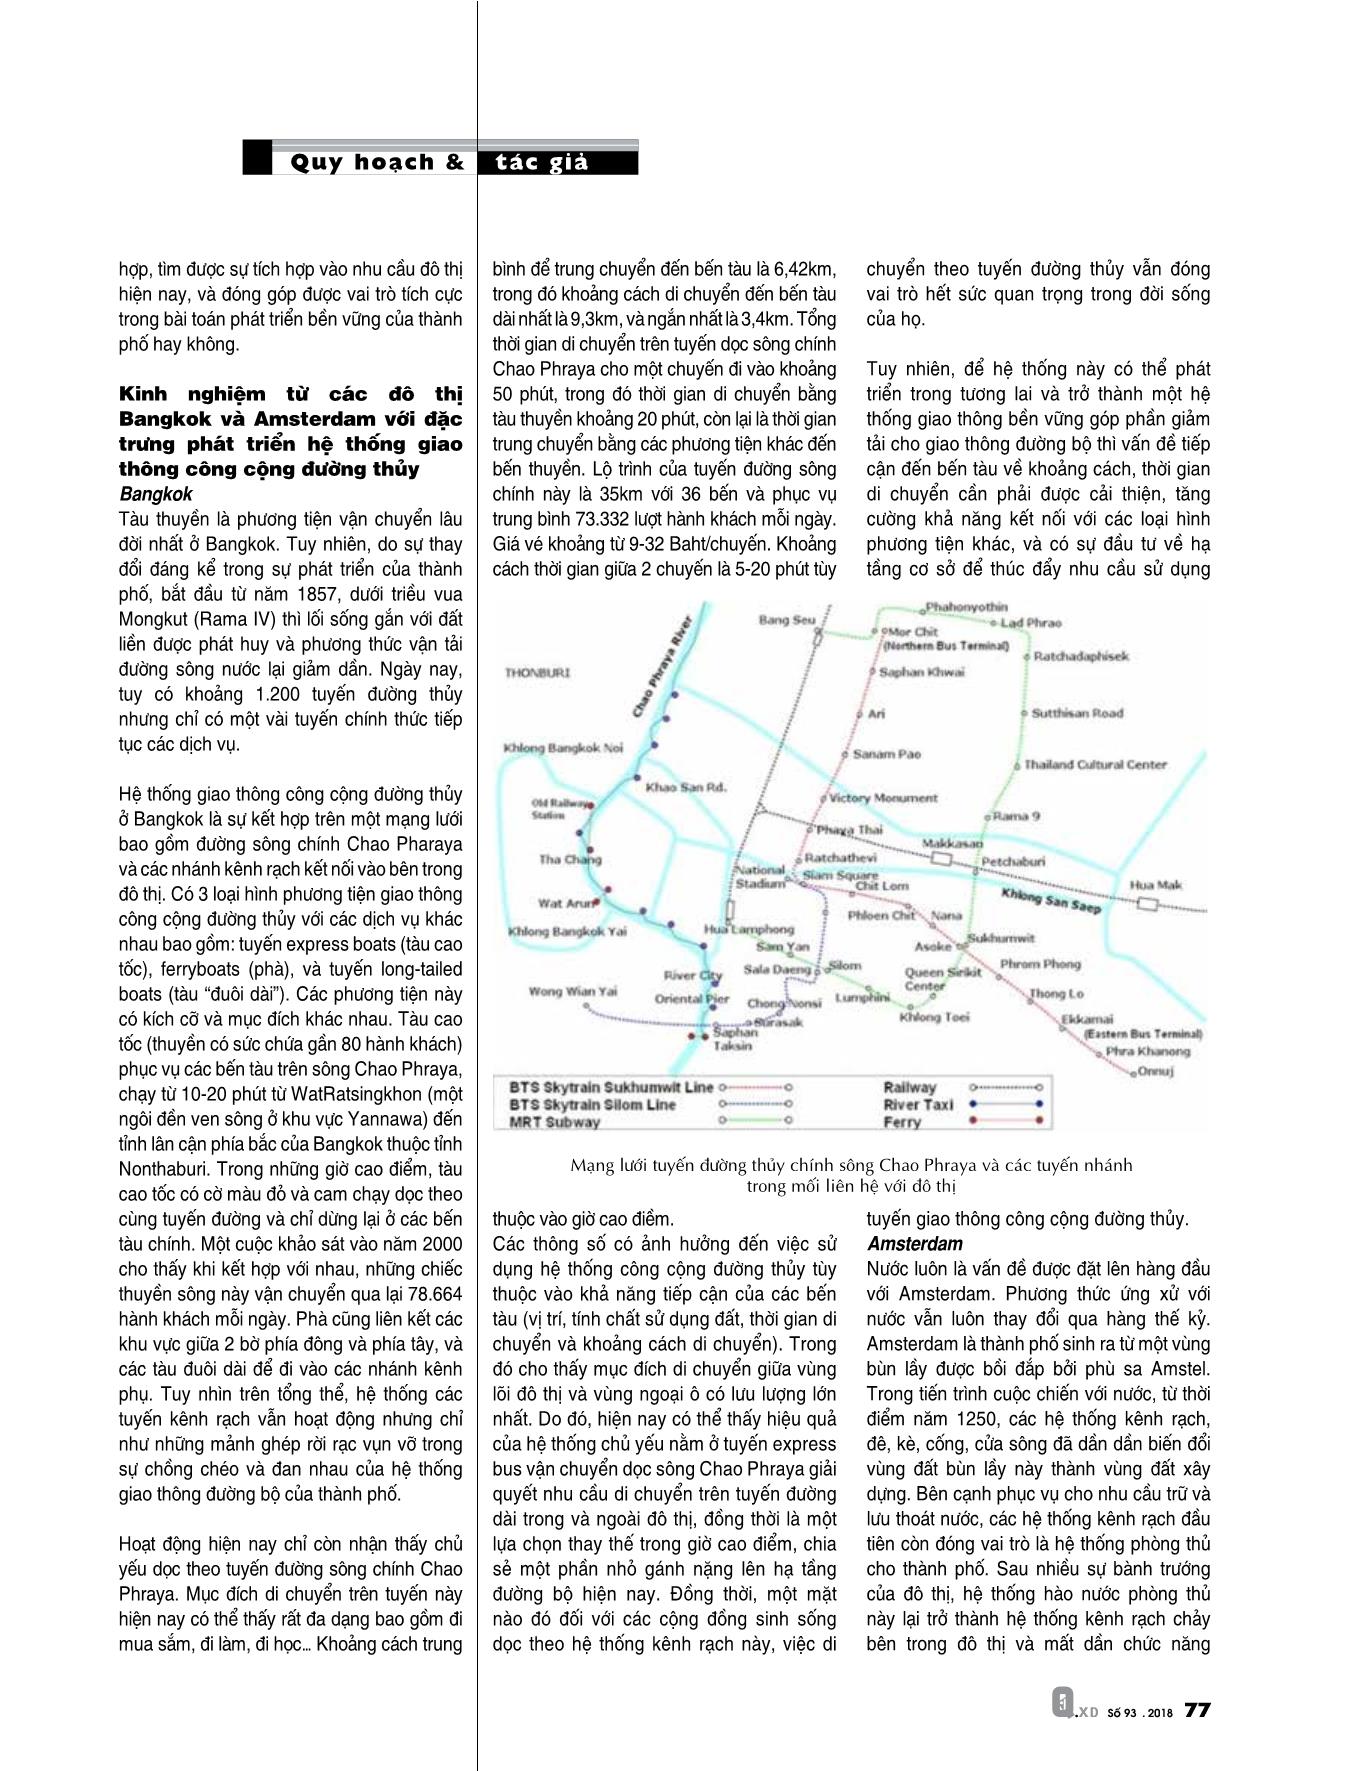 Chiến lược phát triển đô thị gắn với hệ thống giao thông công cộng đường thủy TP. HCM trang 2